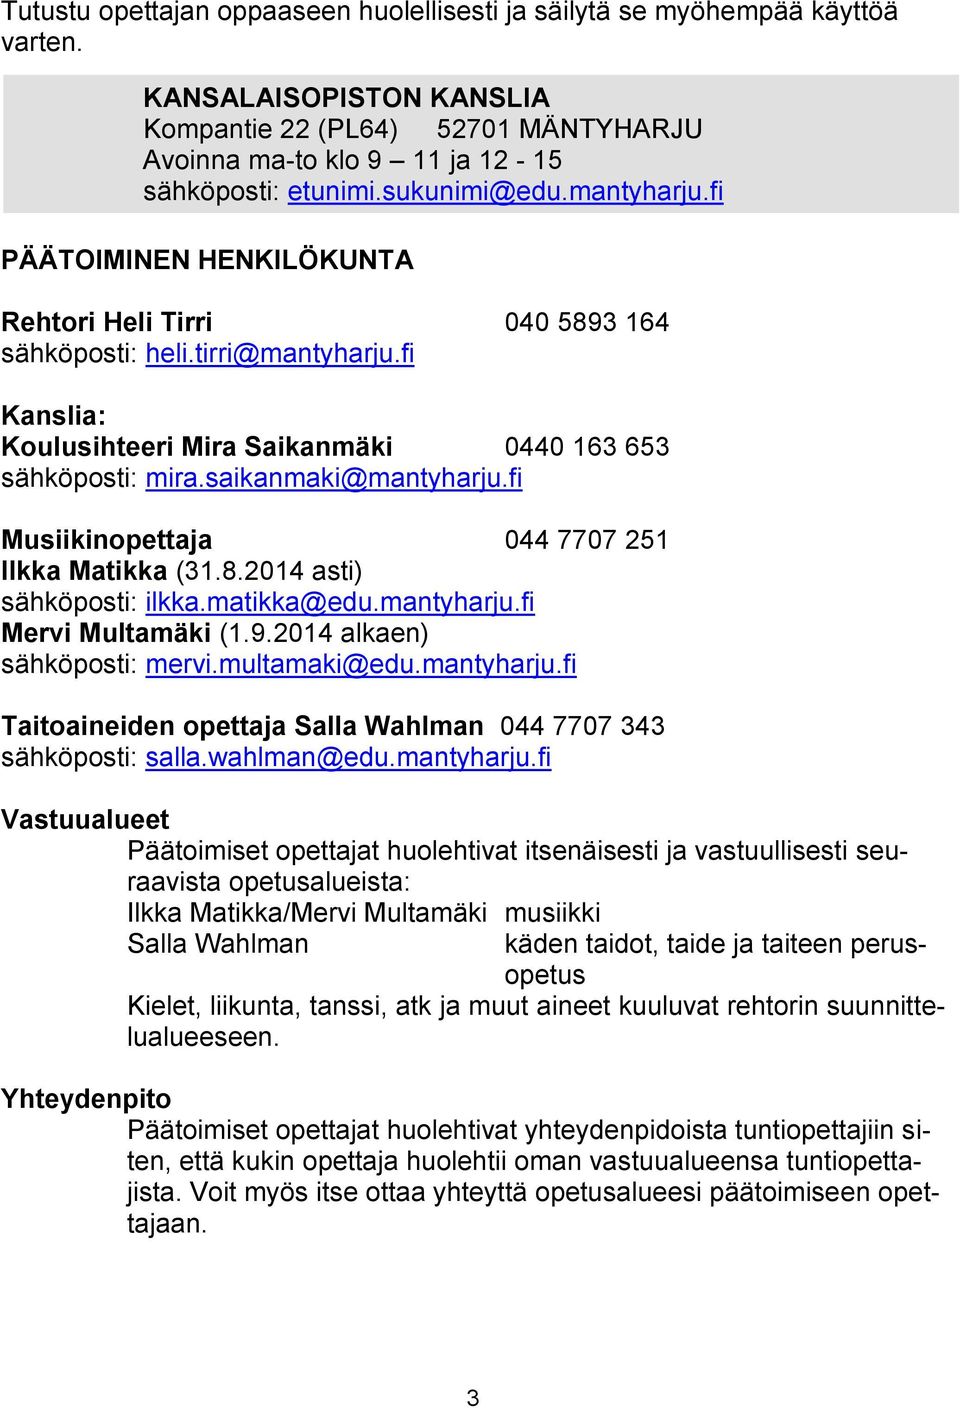 saikanmaki@mantyharju.fi Musiikinopettaja 044 7707 251 Ilkka Matikka (31.8.2014 asti) sähköposti: ilkka.matikka@edu.mantyharju.fi Mervi Multamäki (1.9.2014 alkaen) sähköposti: mervi.multamaki@edu.